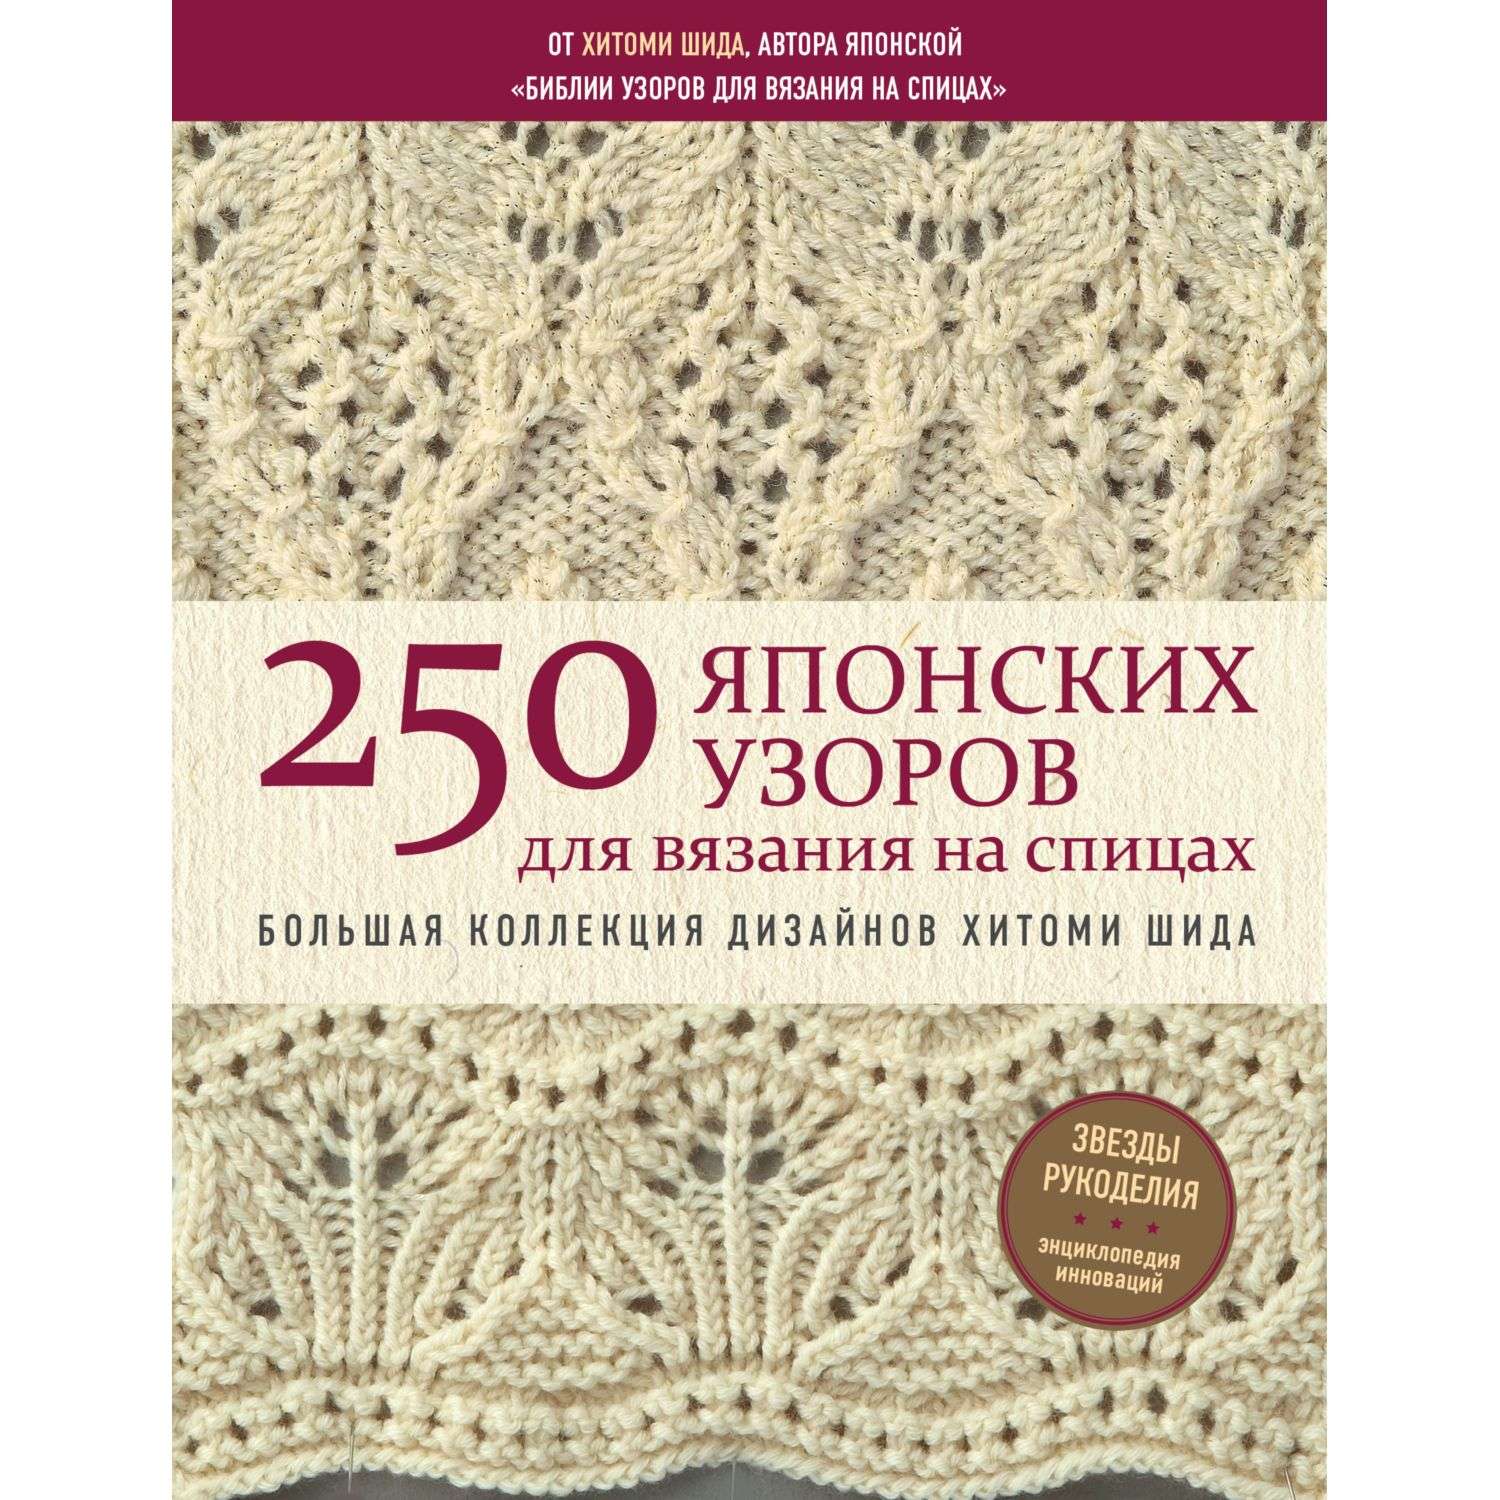 Книга Эксмо 250 японских узоров для вязания на спицах Большая коллекция дизайнов Хитоми Шида - фото 1